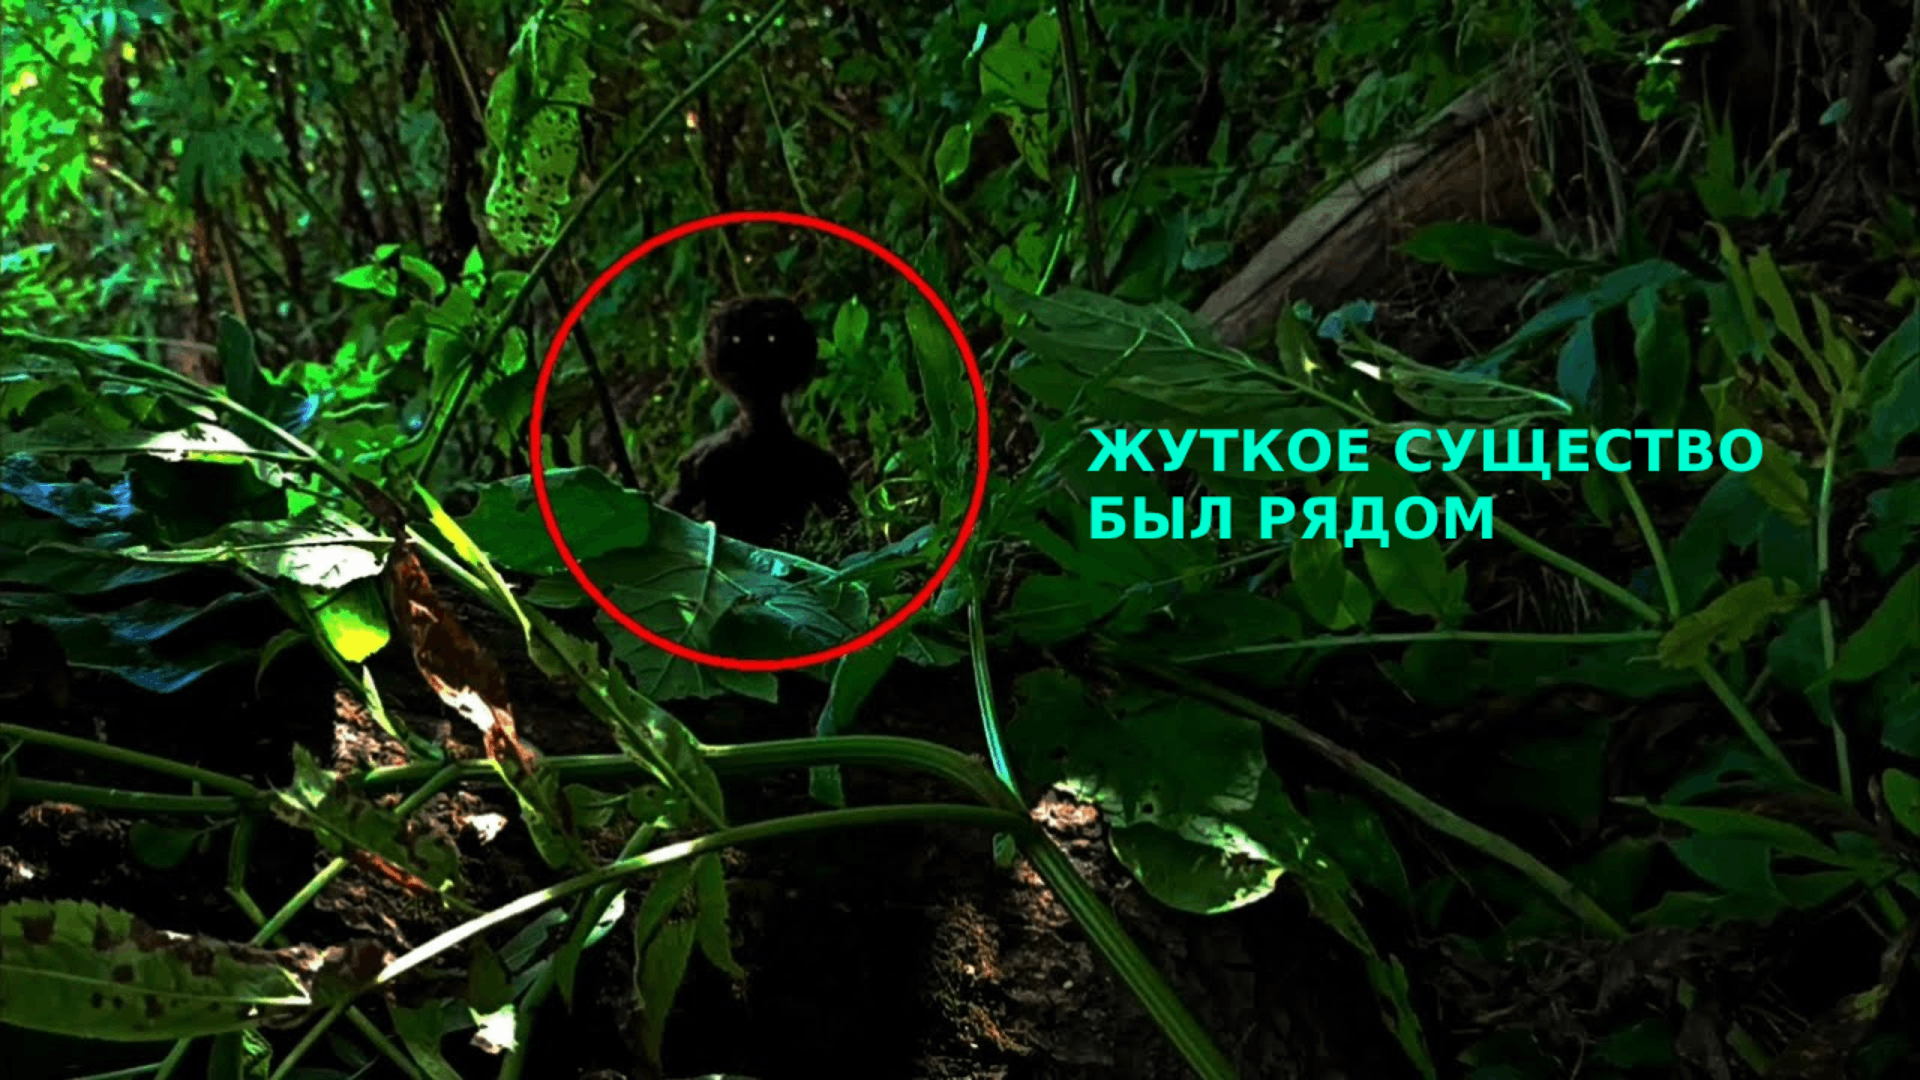 Гуманоид или какое то неизвестное существо снят на камеру в лесу! может это гном